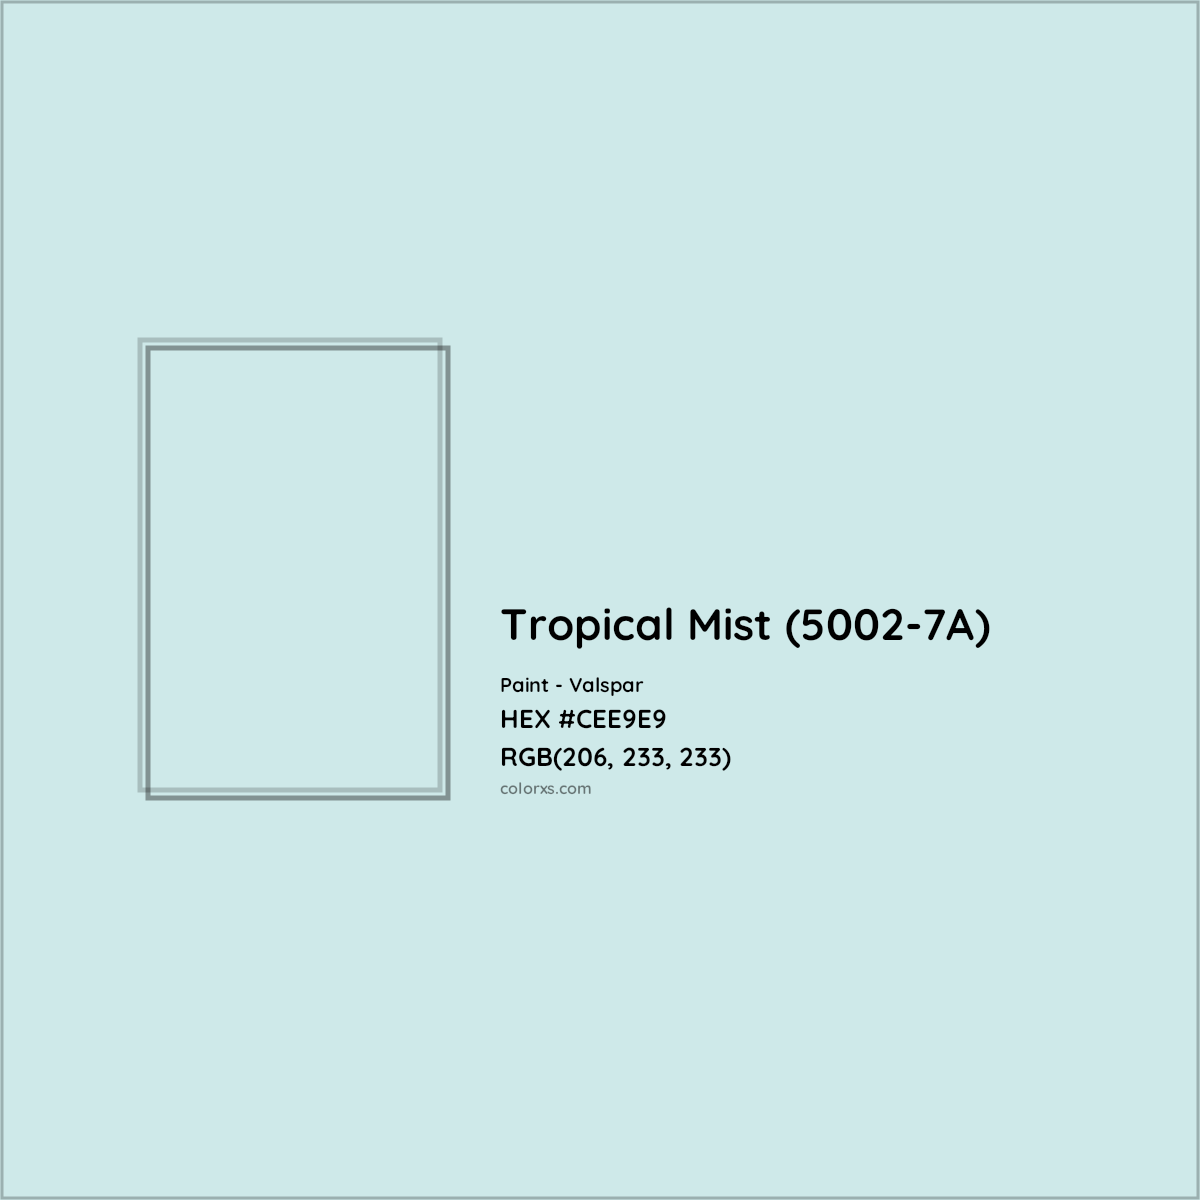 HEX #CEE9E9 Tropical Mist (5002-7A) Paint Valspar - Color Code